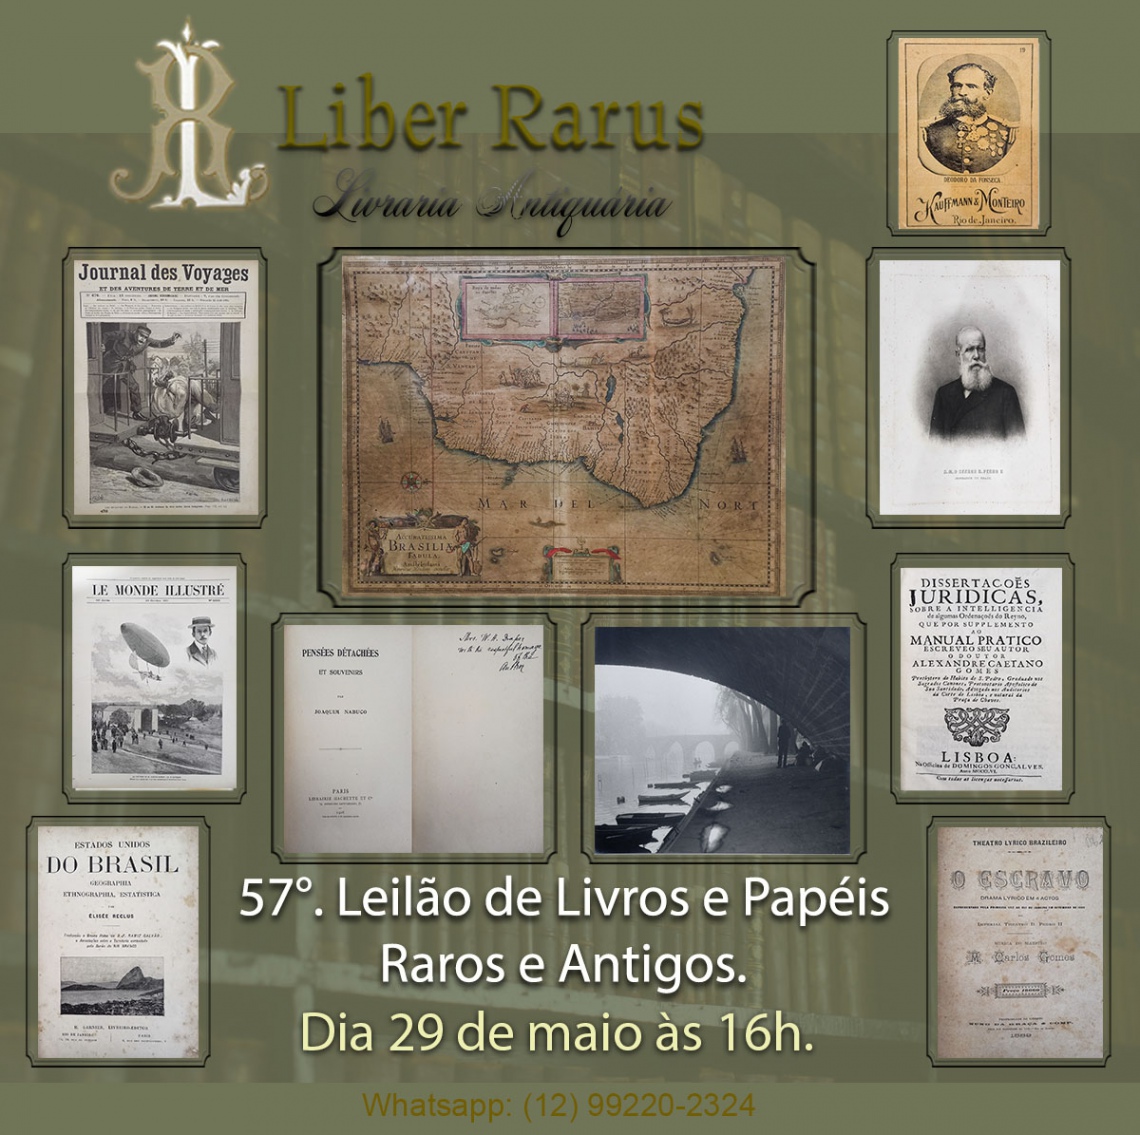 57º Leilão de Livros e Papéis Raros e Antigos - Liber Rarus